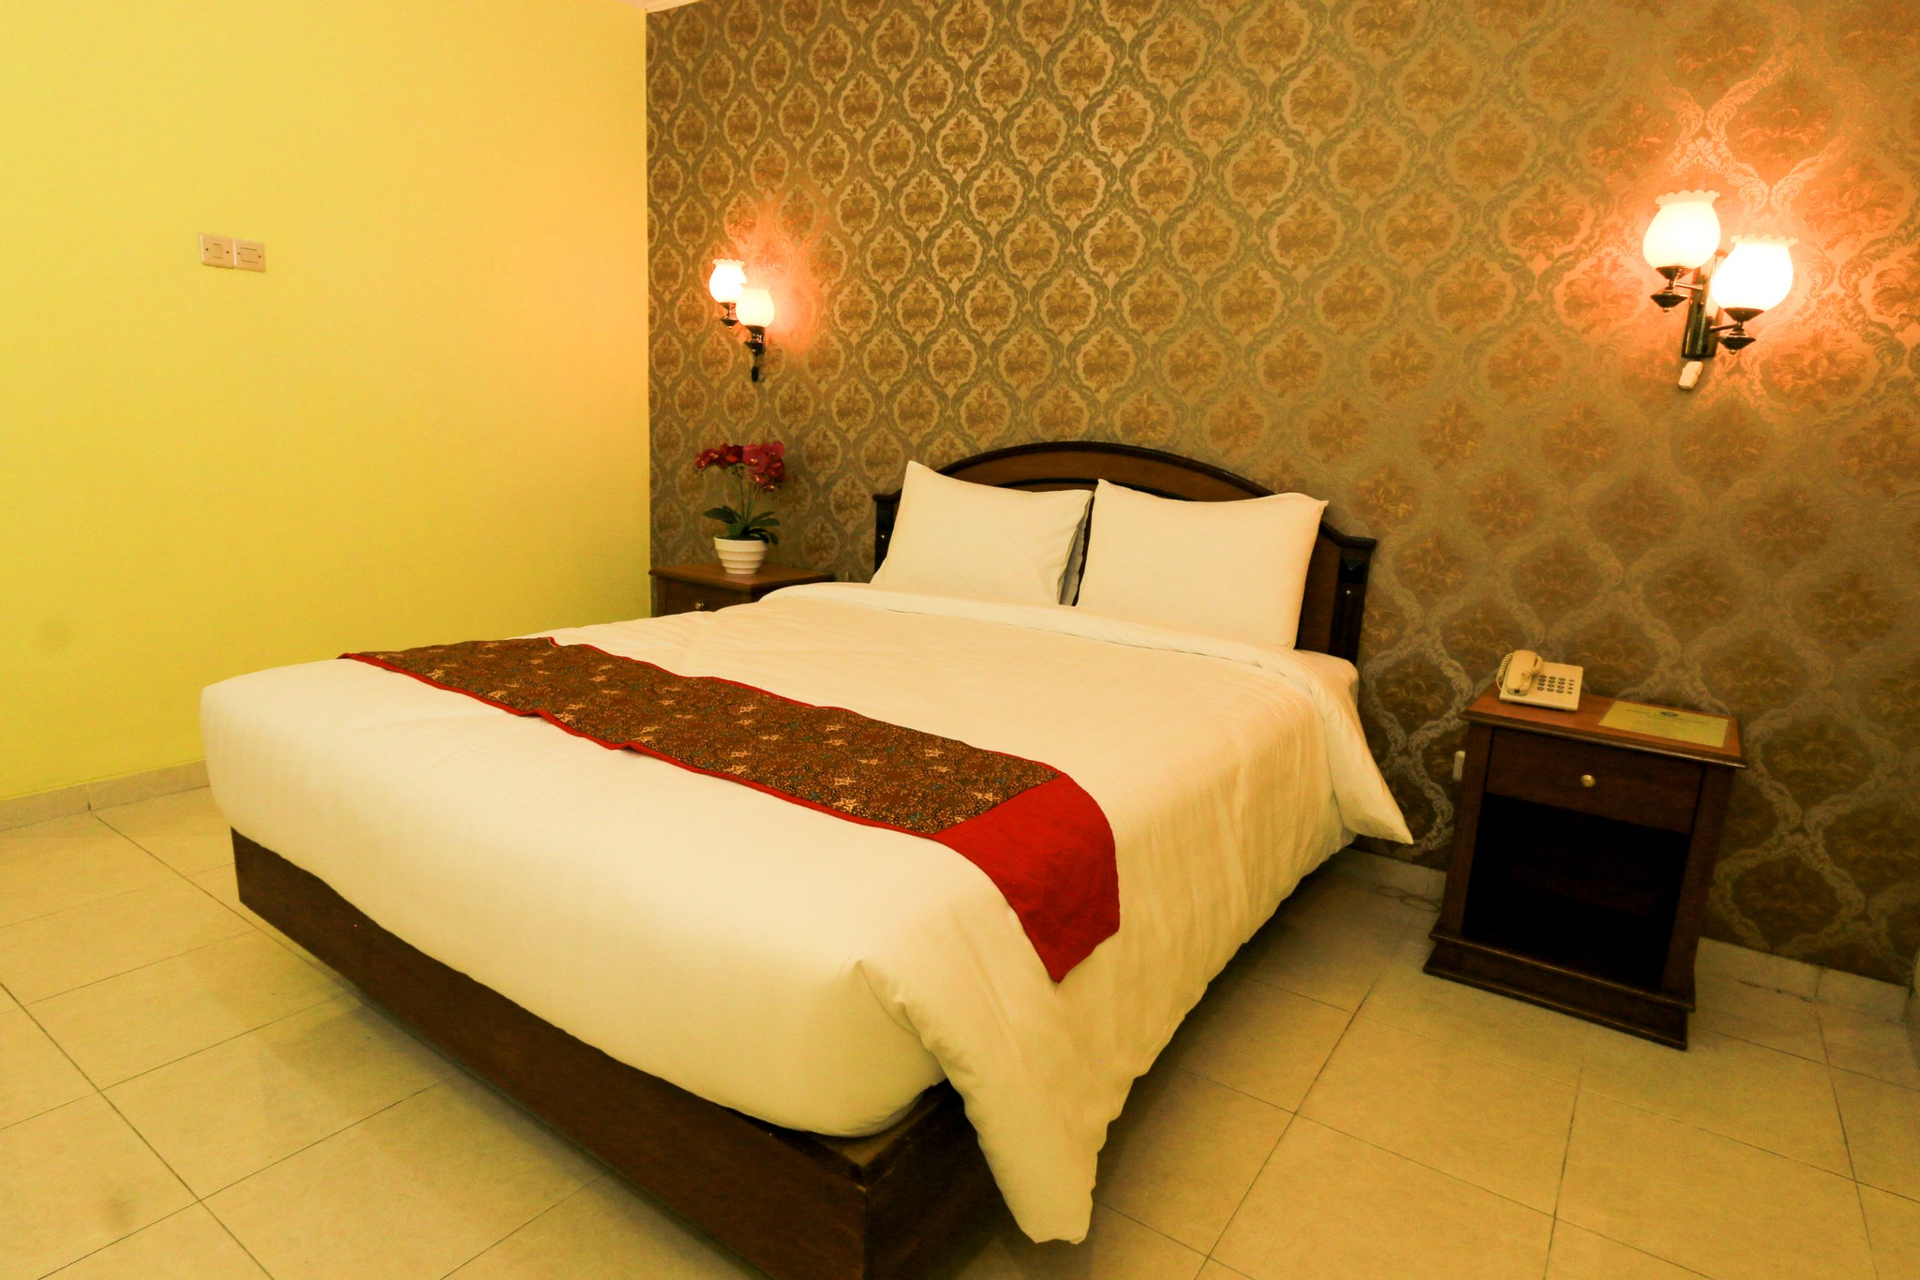 Bedroom 3, Tjiptorini Jaya Hotel, Yogyakarta